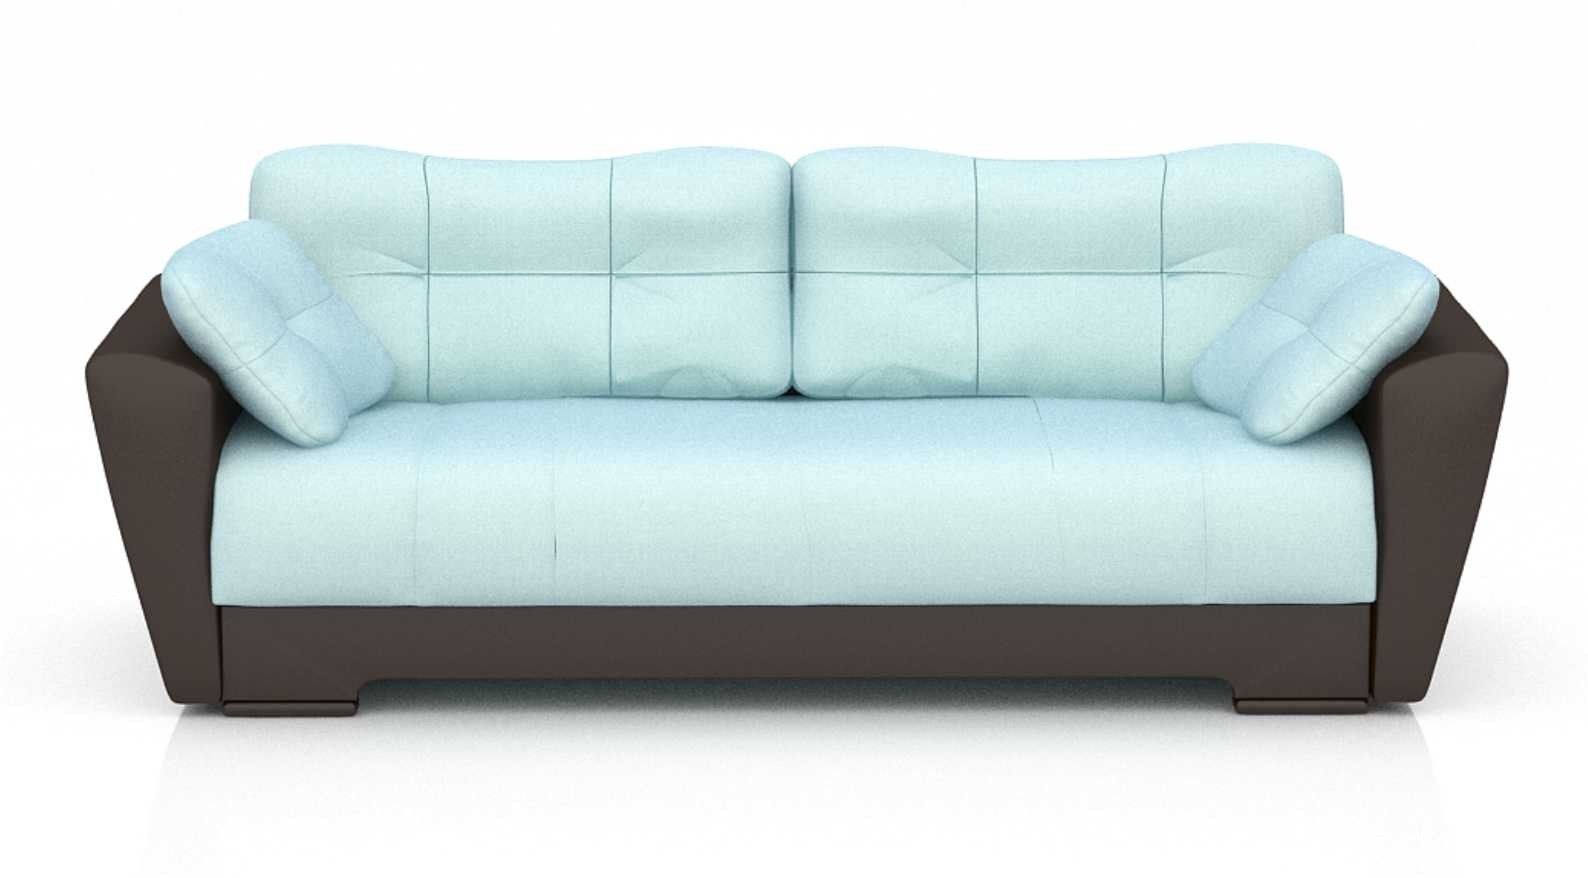 Где купить современный диван? И как выбрать современный диван?